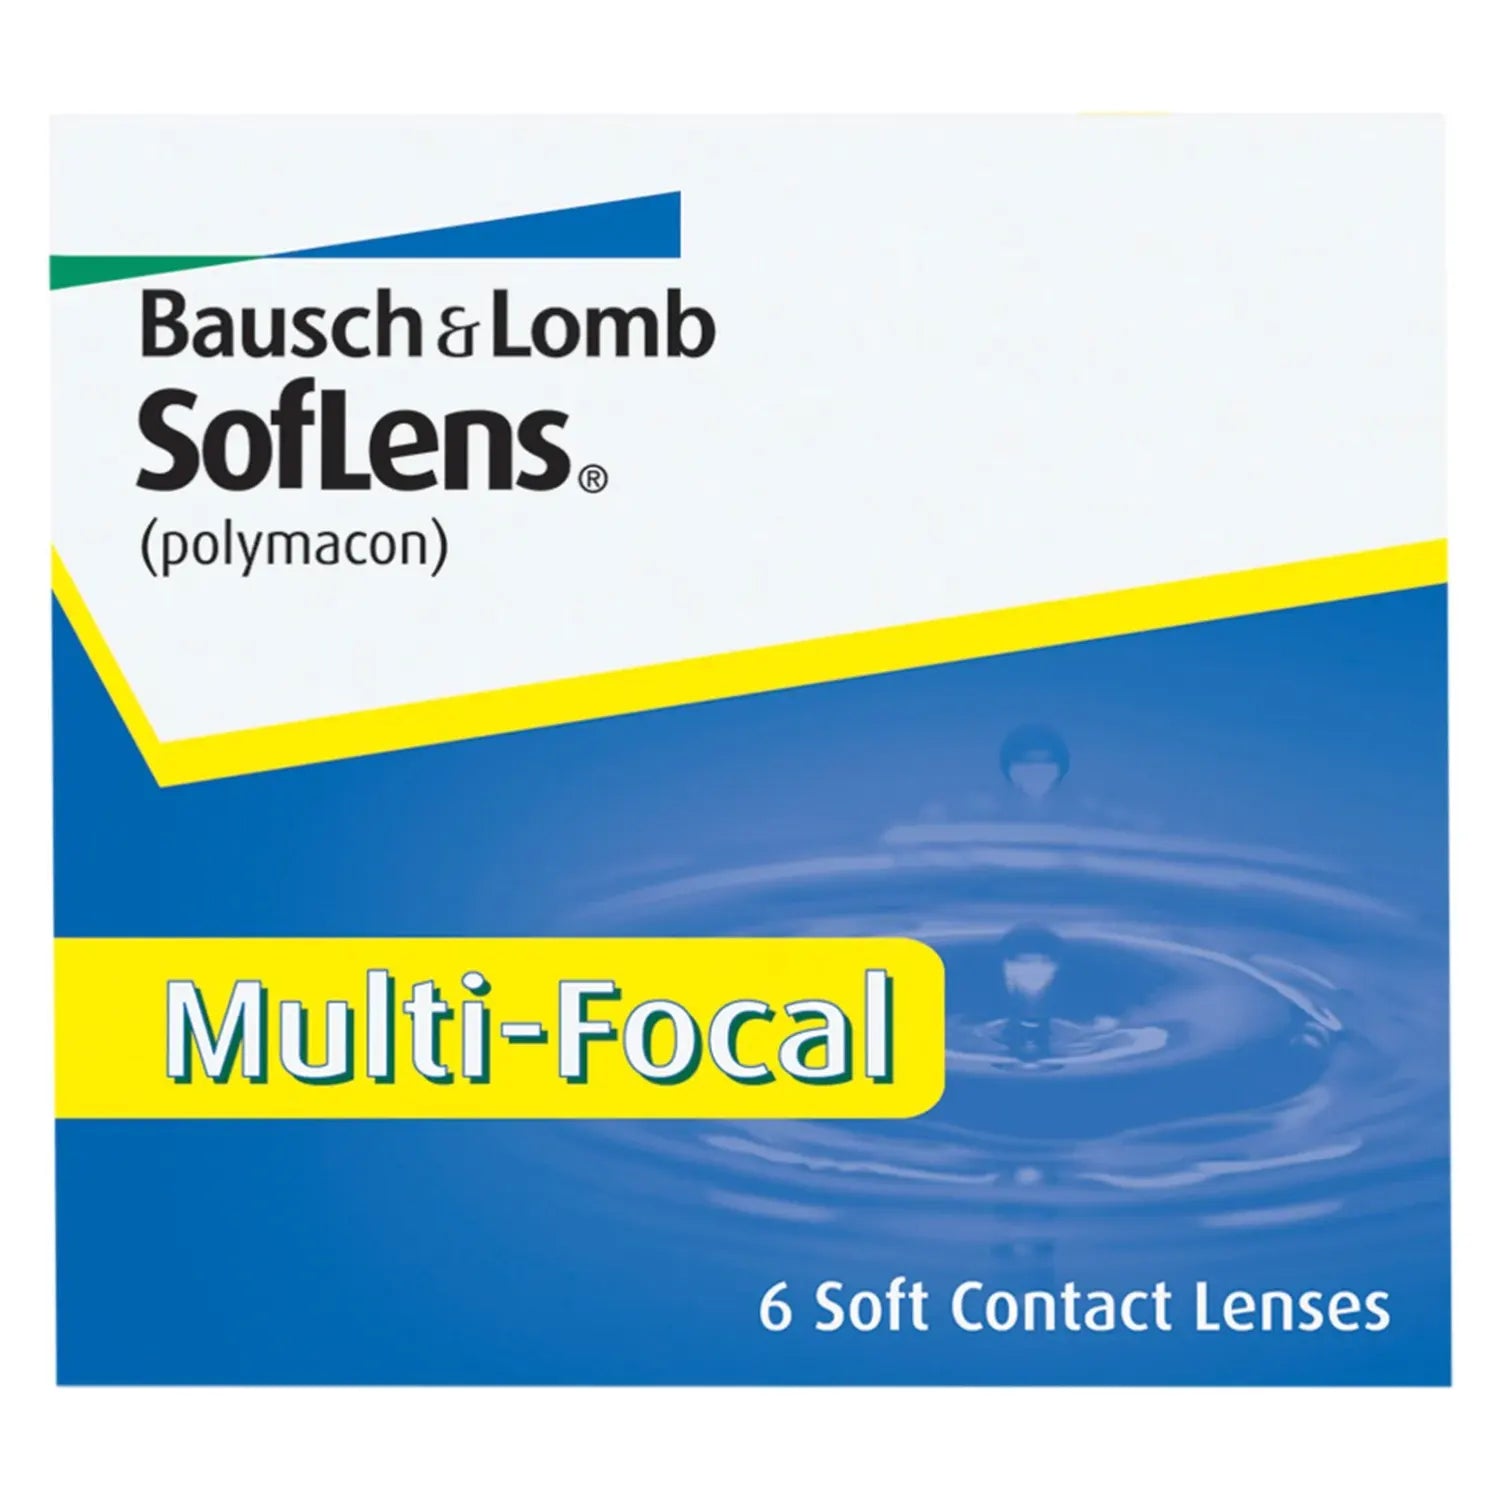 SofLens contact lenses